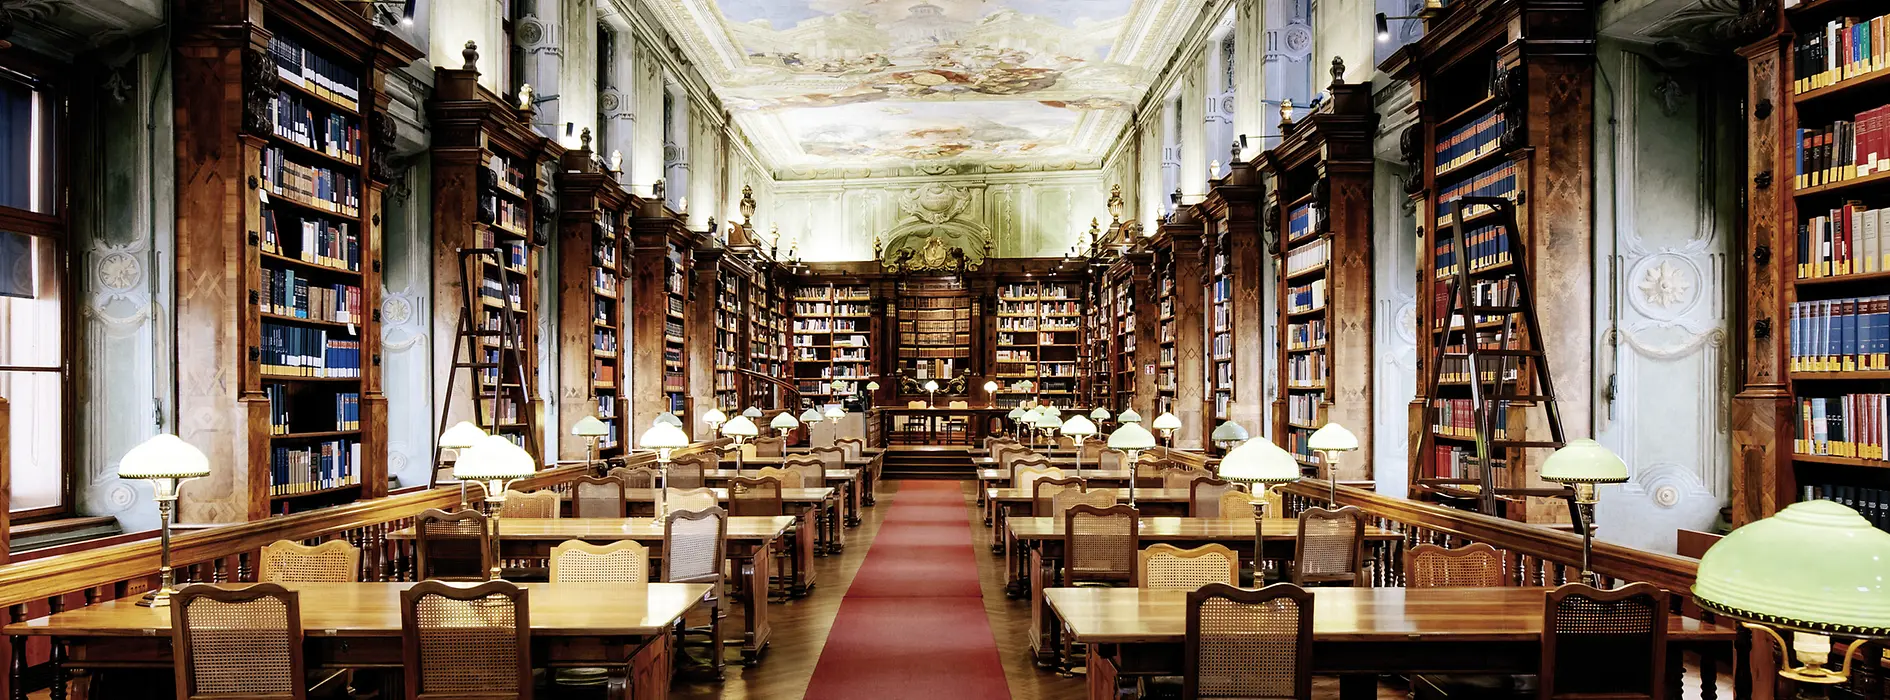 Čítárna v Rakouské národní knihovně